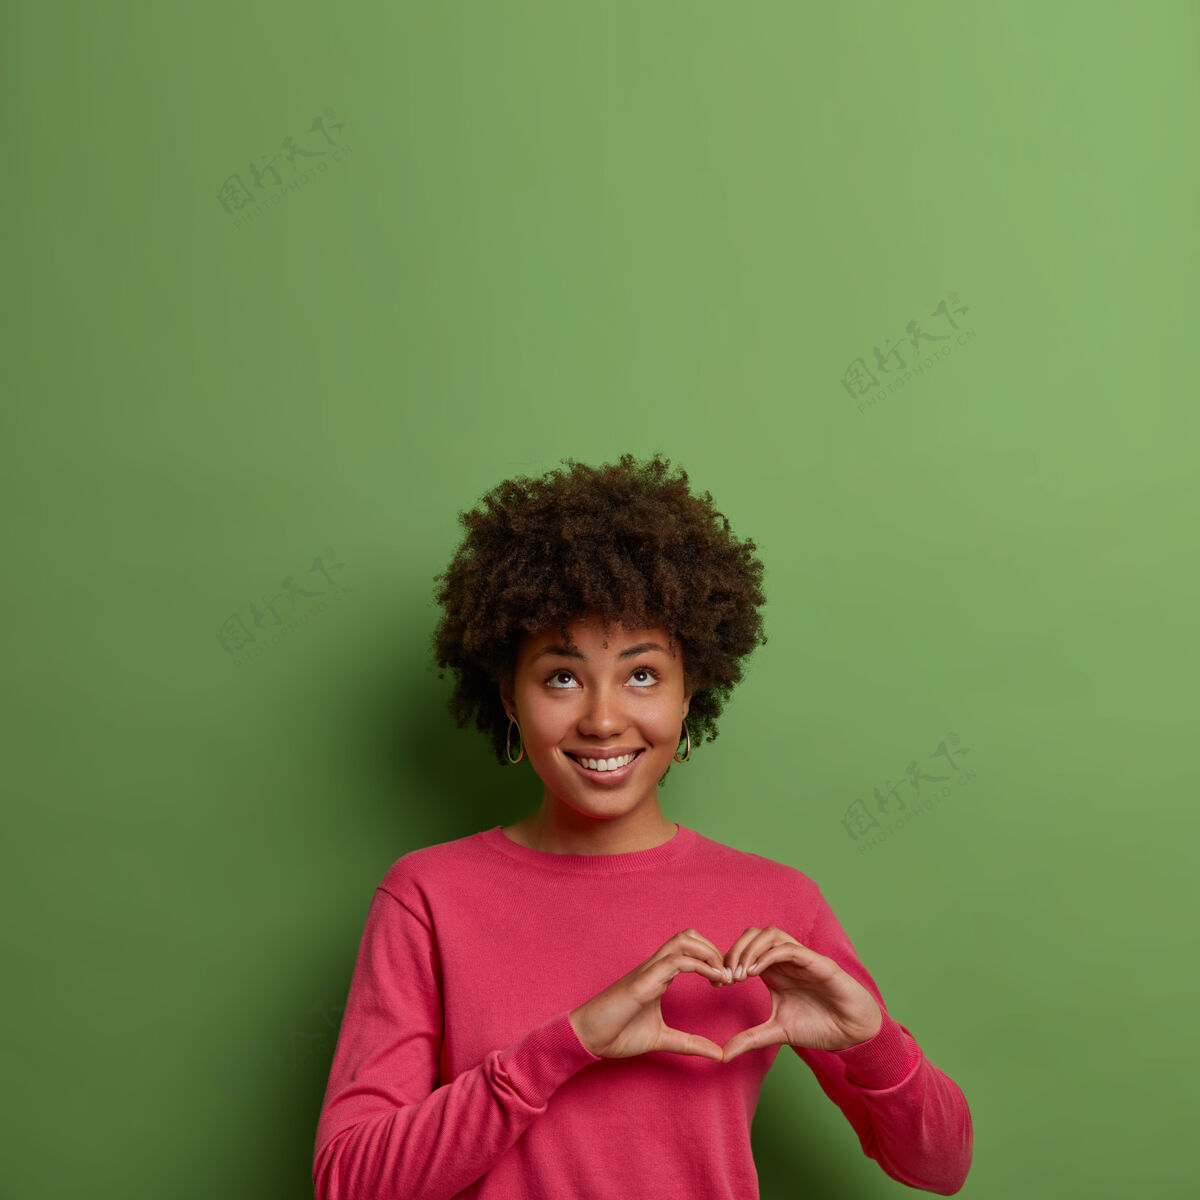 快乐一幅令人愉快的美籍黑人女性肖像 胸前有心形标志 表达爱意和关怀 抬头看去 身穿粉色套头衫 对着绿色墙壁摆姿势 向上腾空套头衫卷发显示